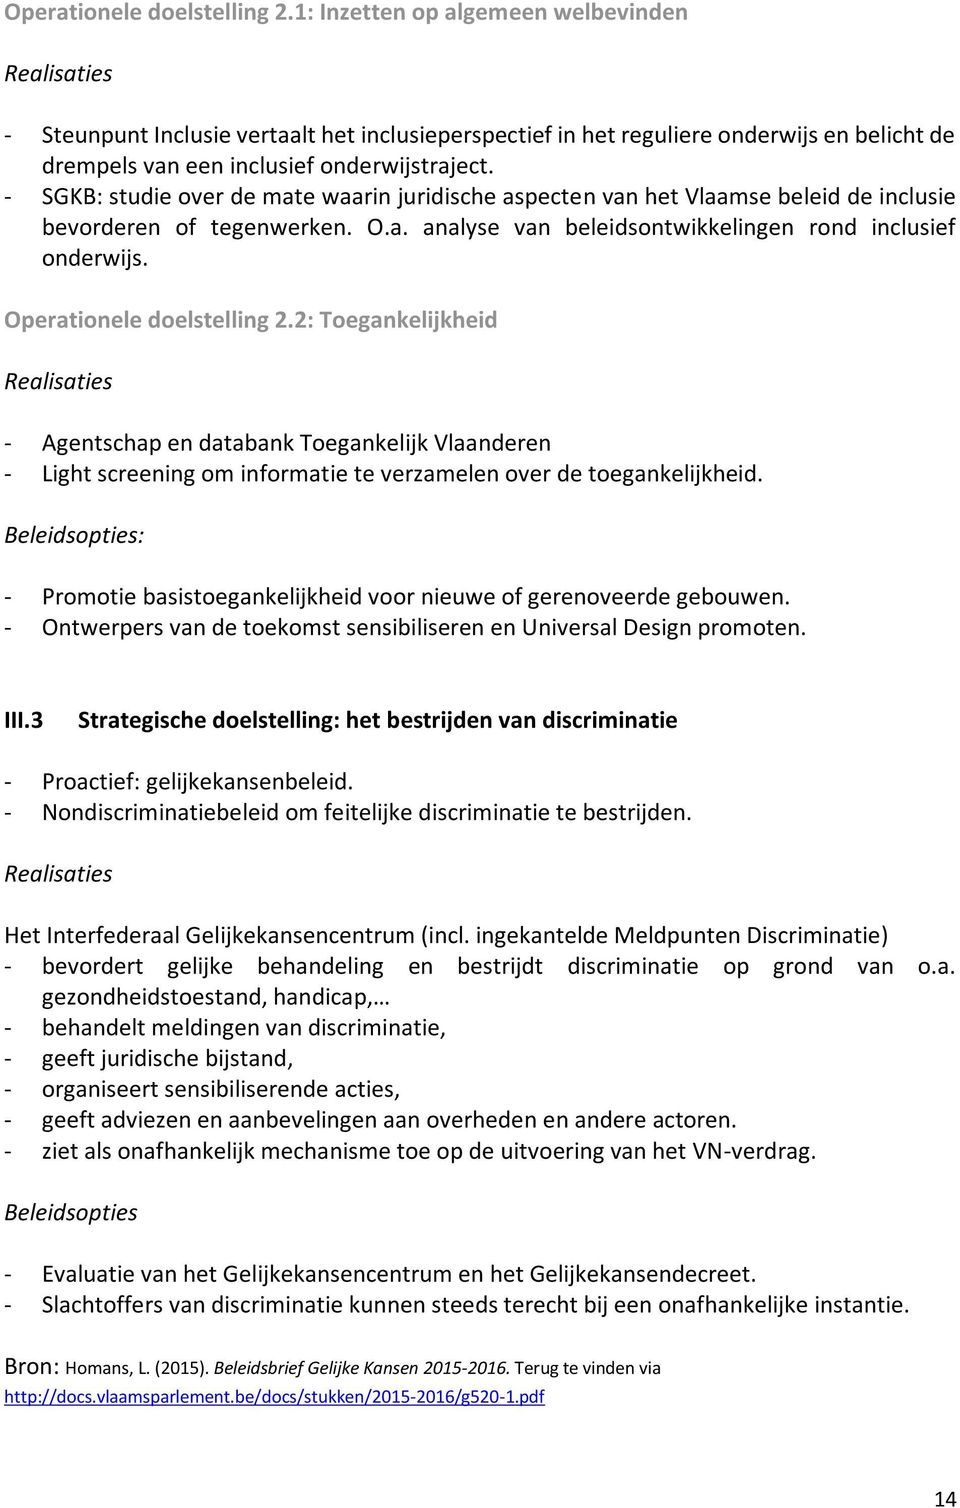 - SGKB: studie over de mate waarin juridische aspecten van het Vlaamse beleid de inclusie bevorderen of tegenwerken. O.a. analyse van beleidsontwikkelingen rond inclusief onderwijs.